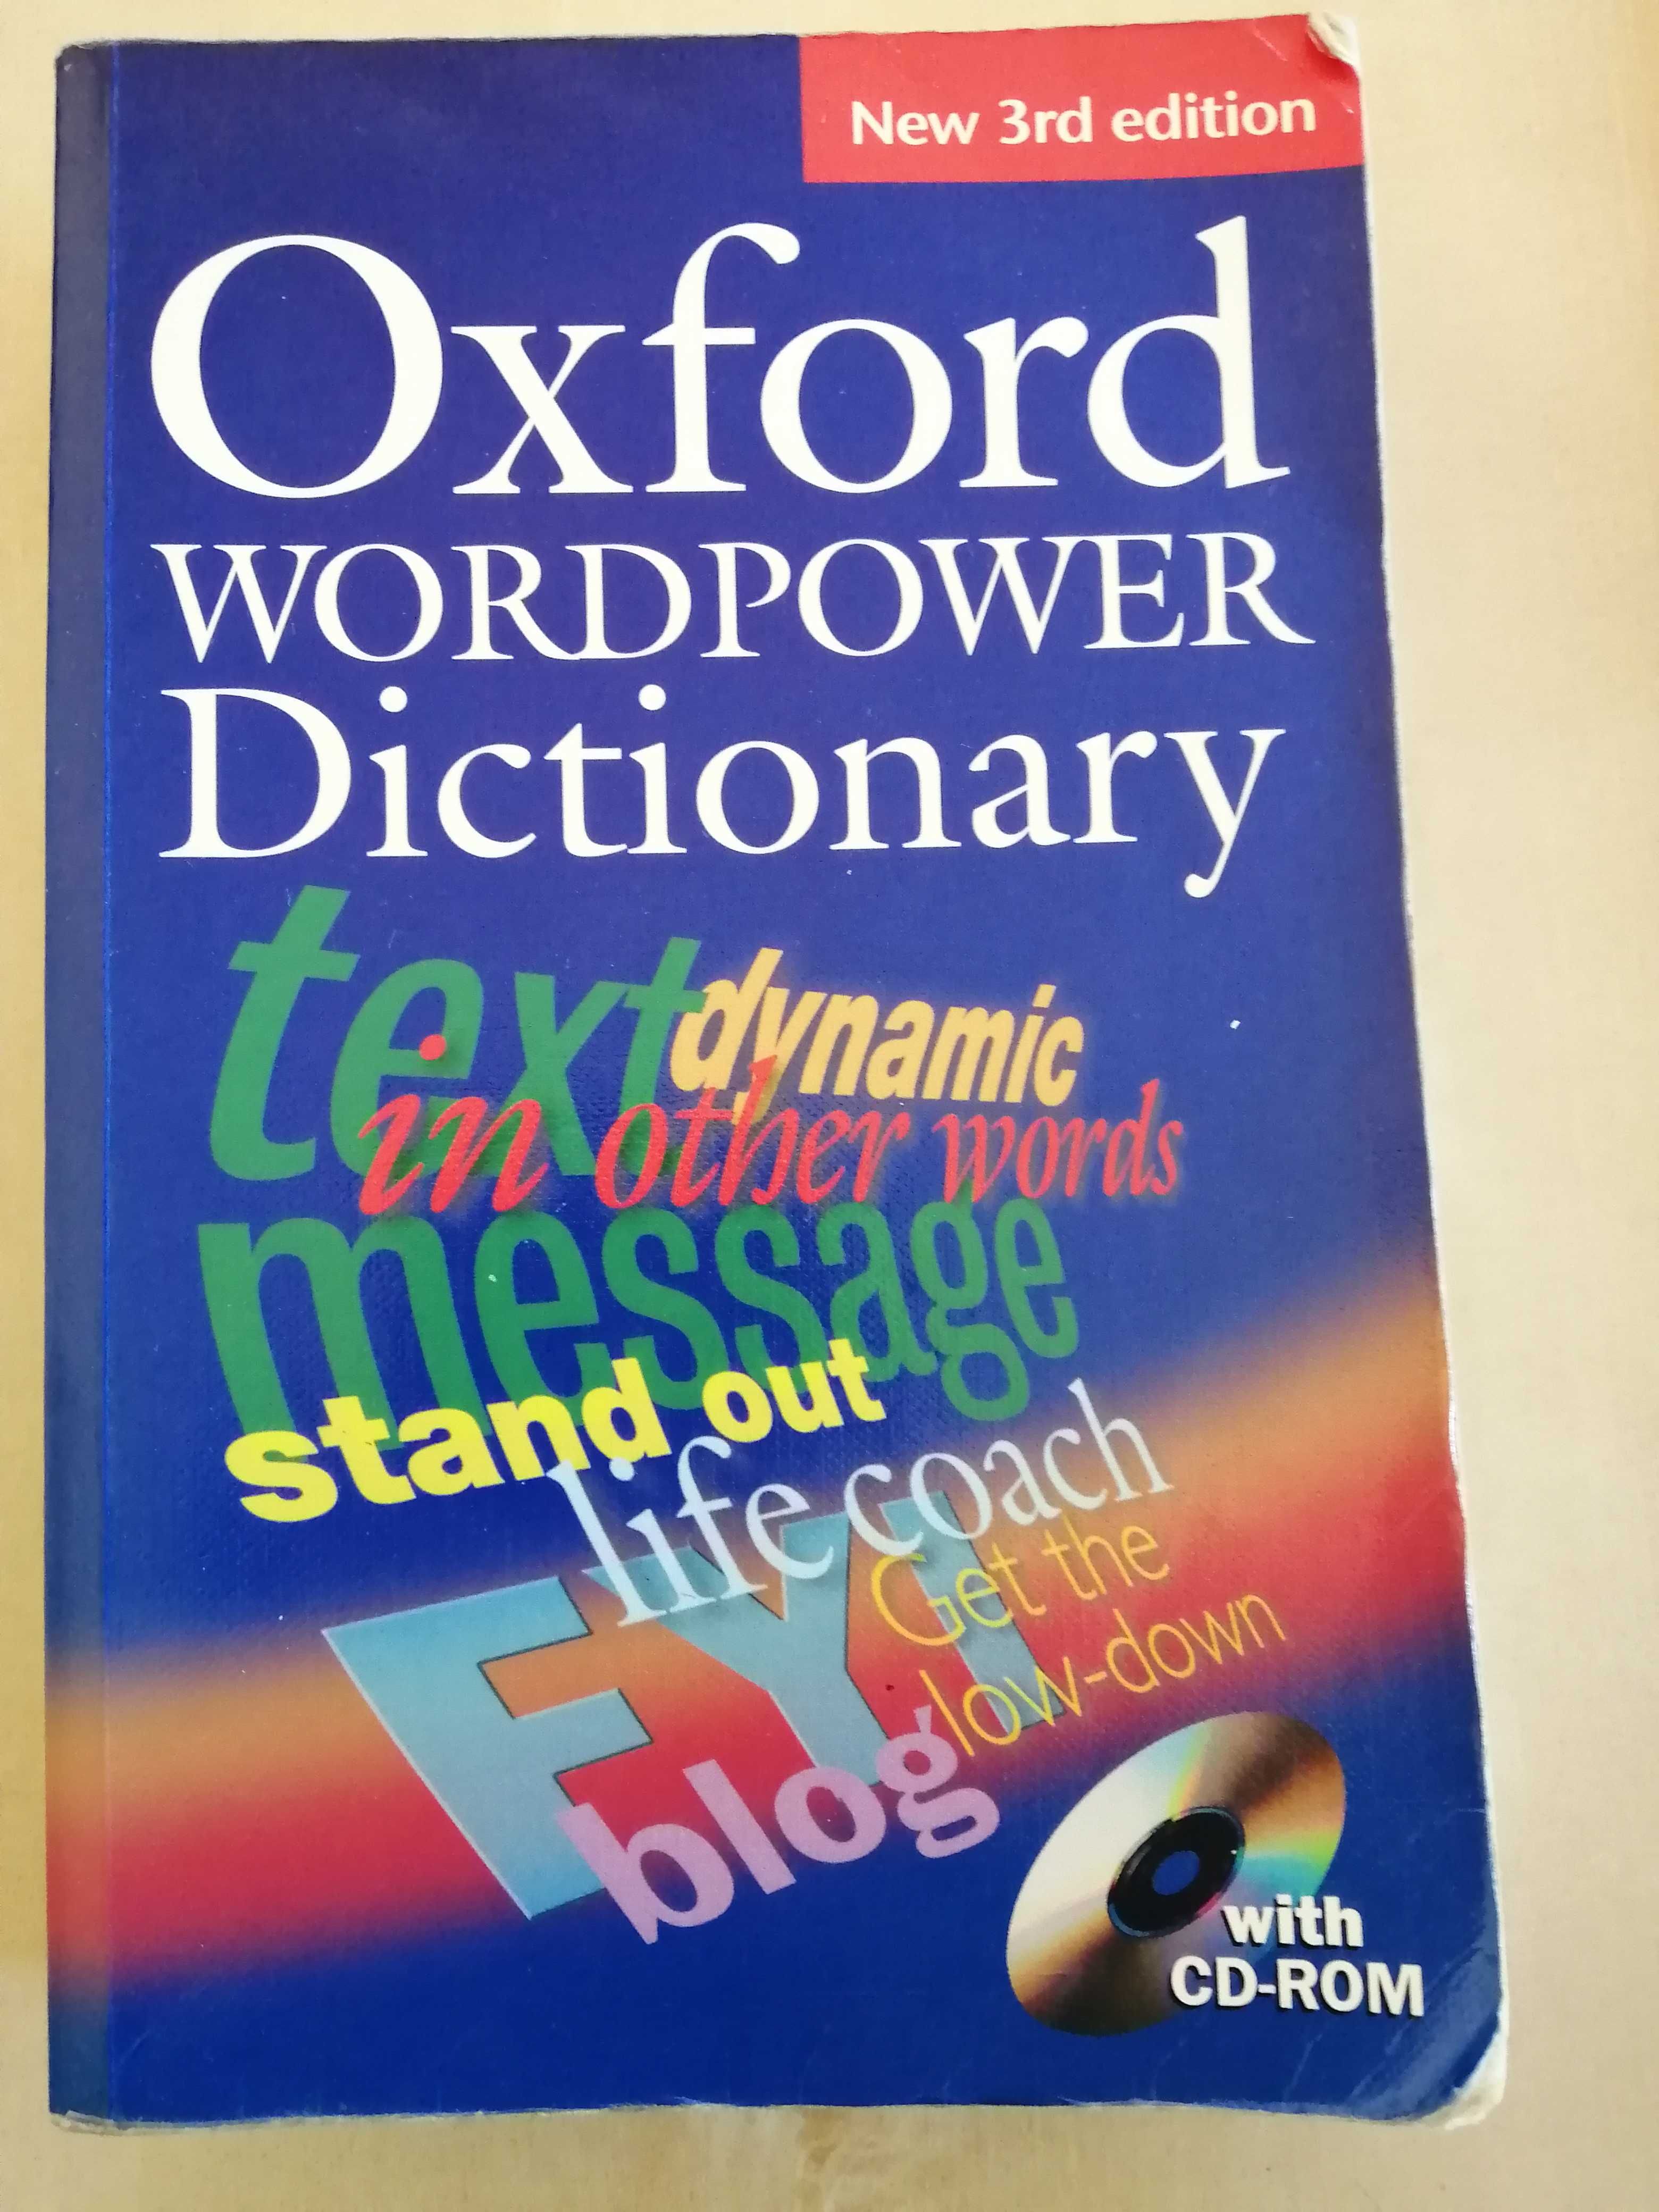 Dicionário Inglês OXFORD wordpower